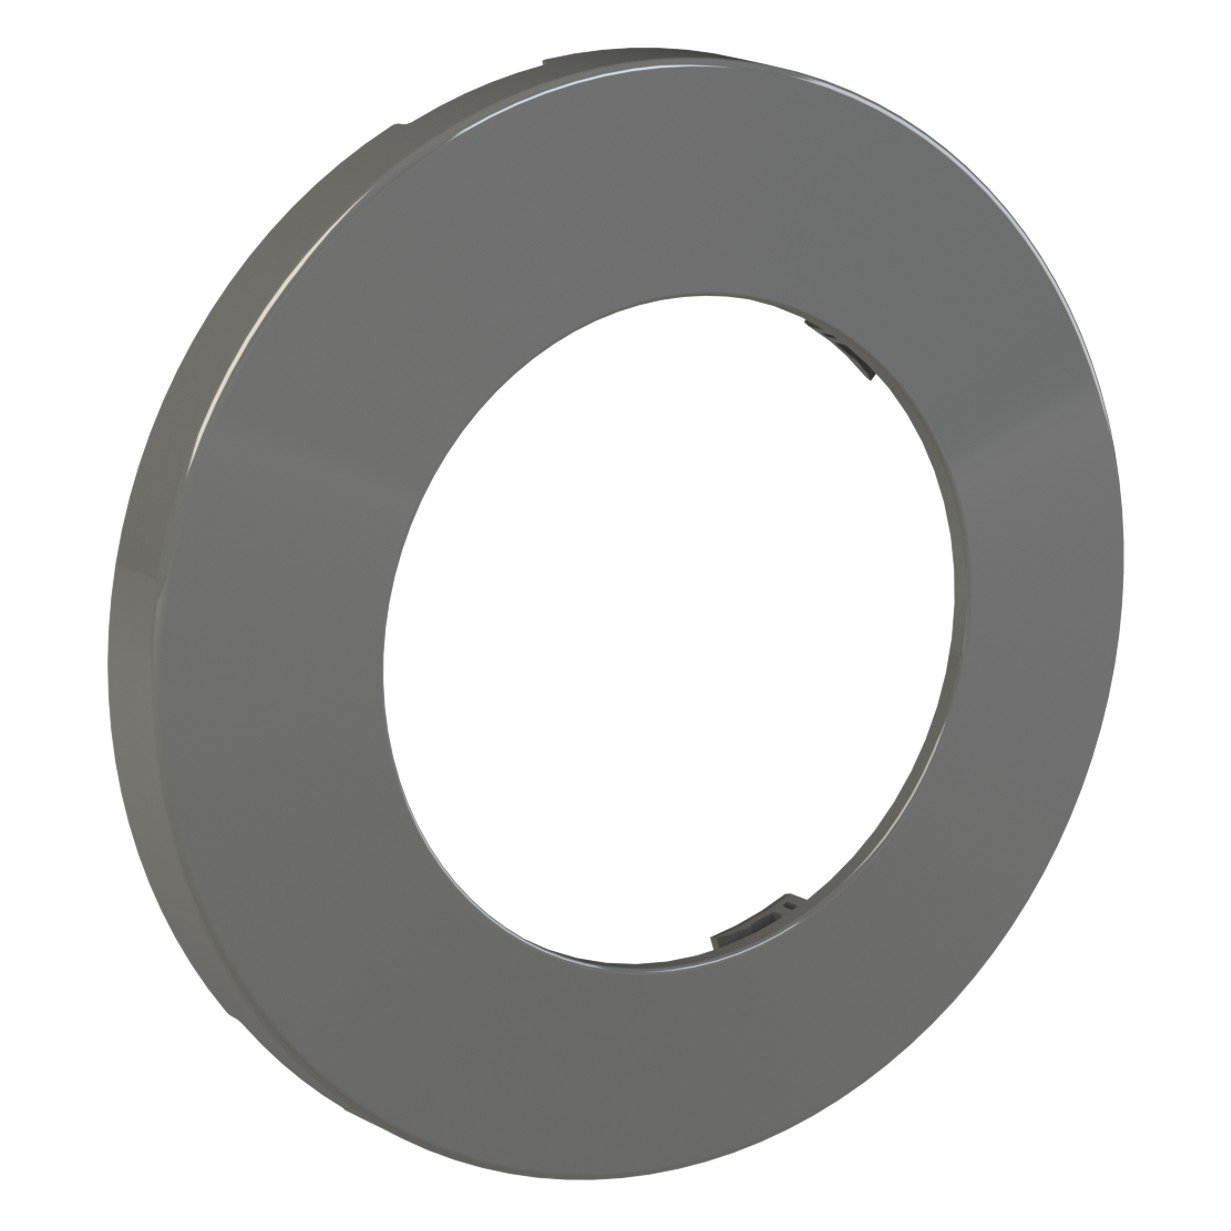 Adagio pro decorative flange / cover ring 100mm - Anthracite